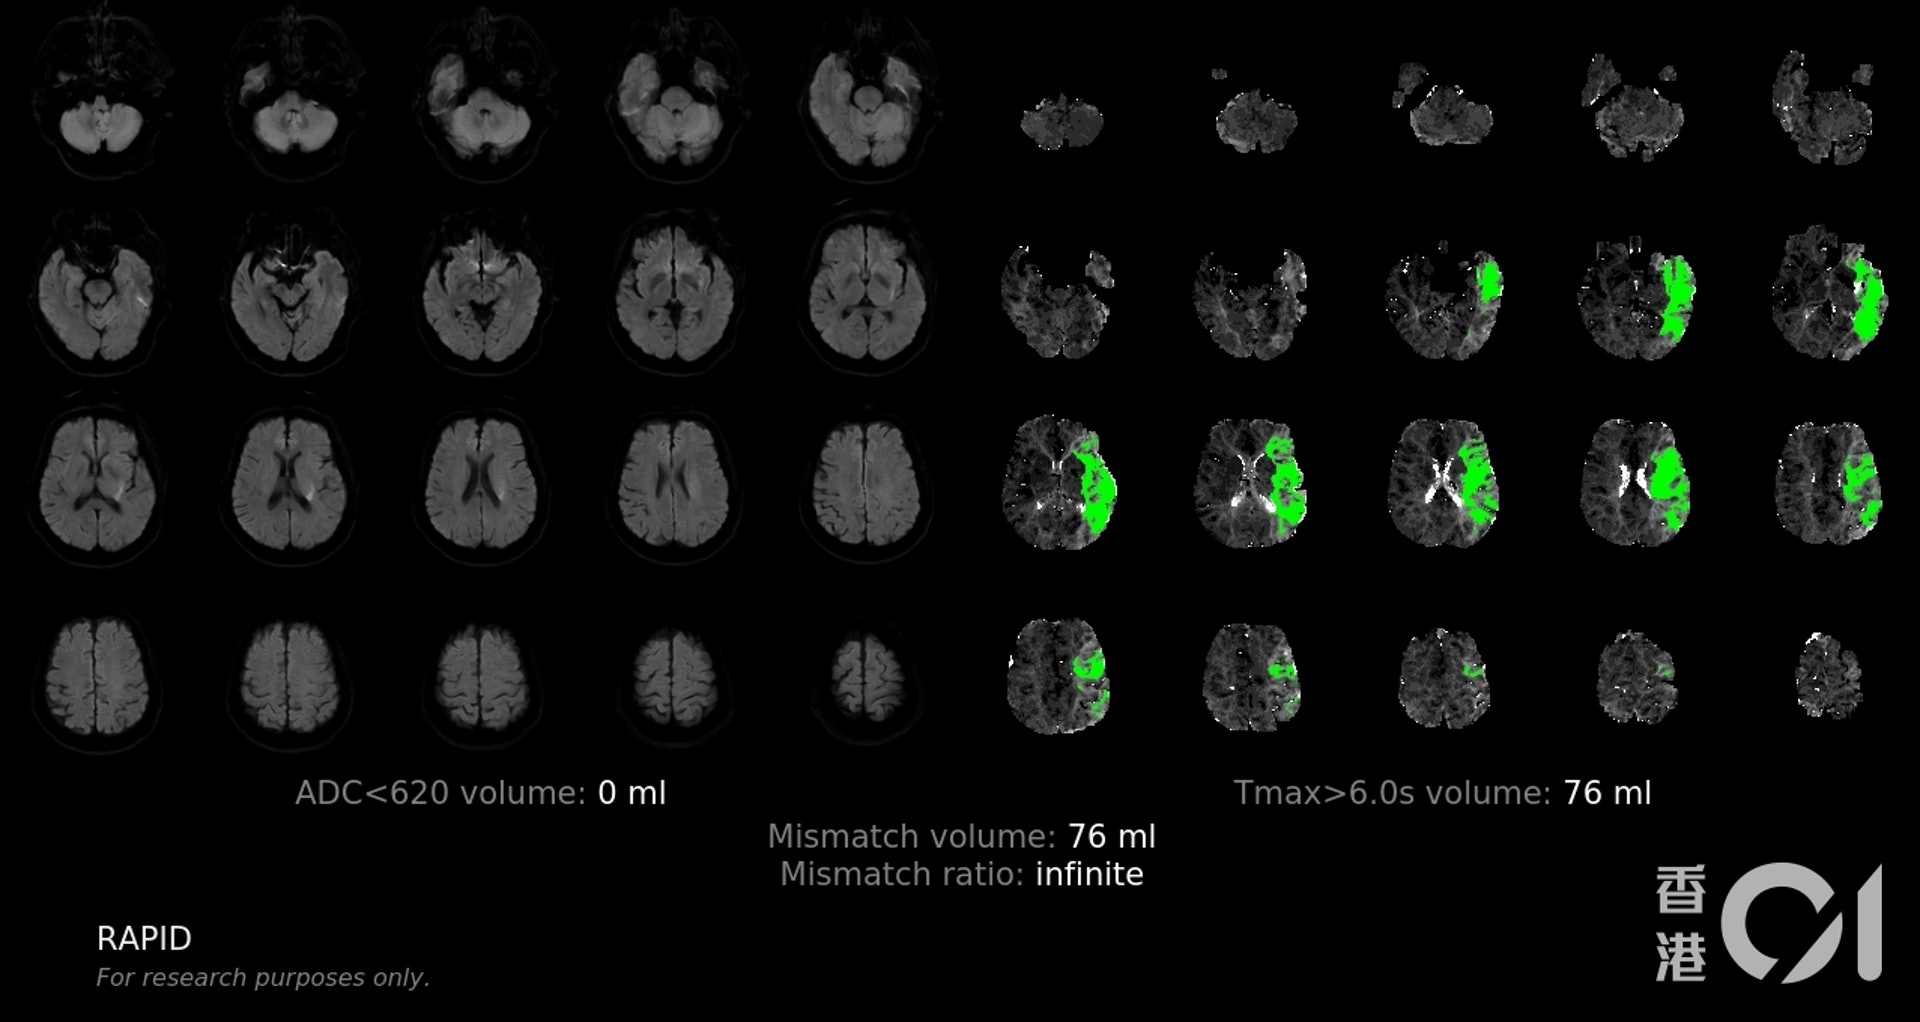 圖為人工智能系統的腦部圖像分析，綠色為低灌注的腦組織範圍（可拯救組織）。綠色範圍越大，術後改善病情的機會越大。（養和醫院提供）